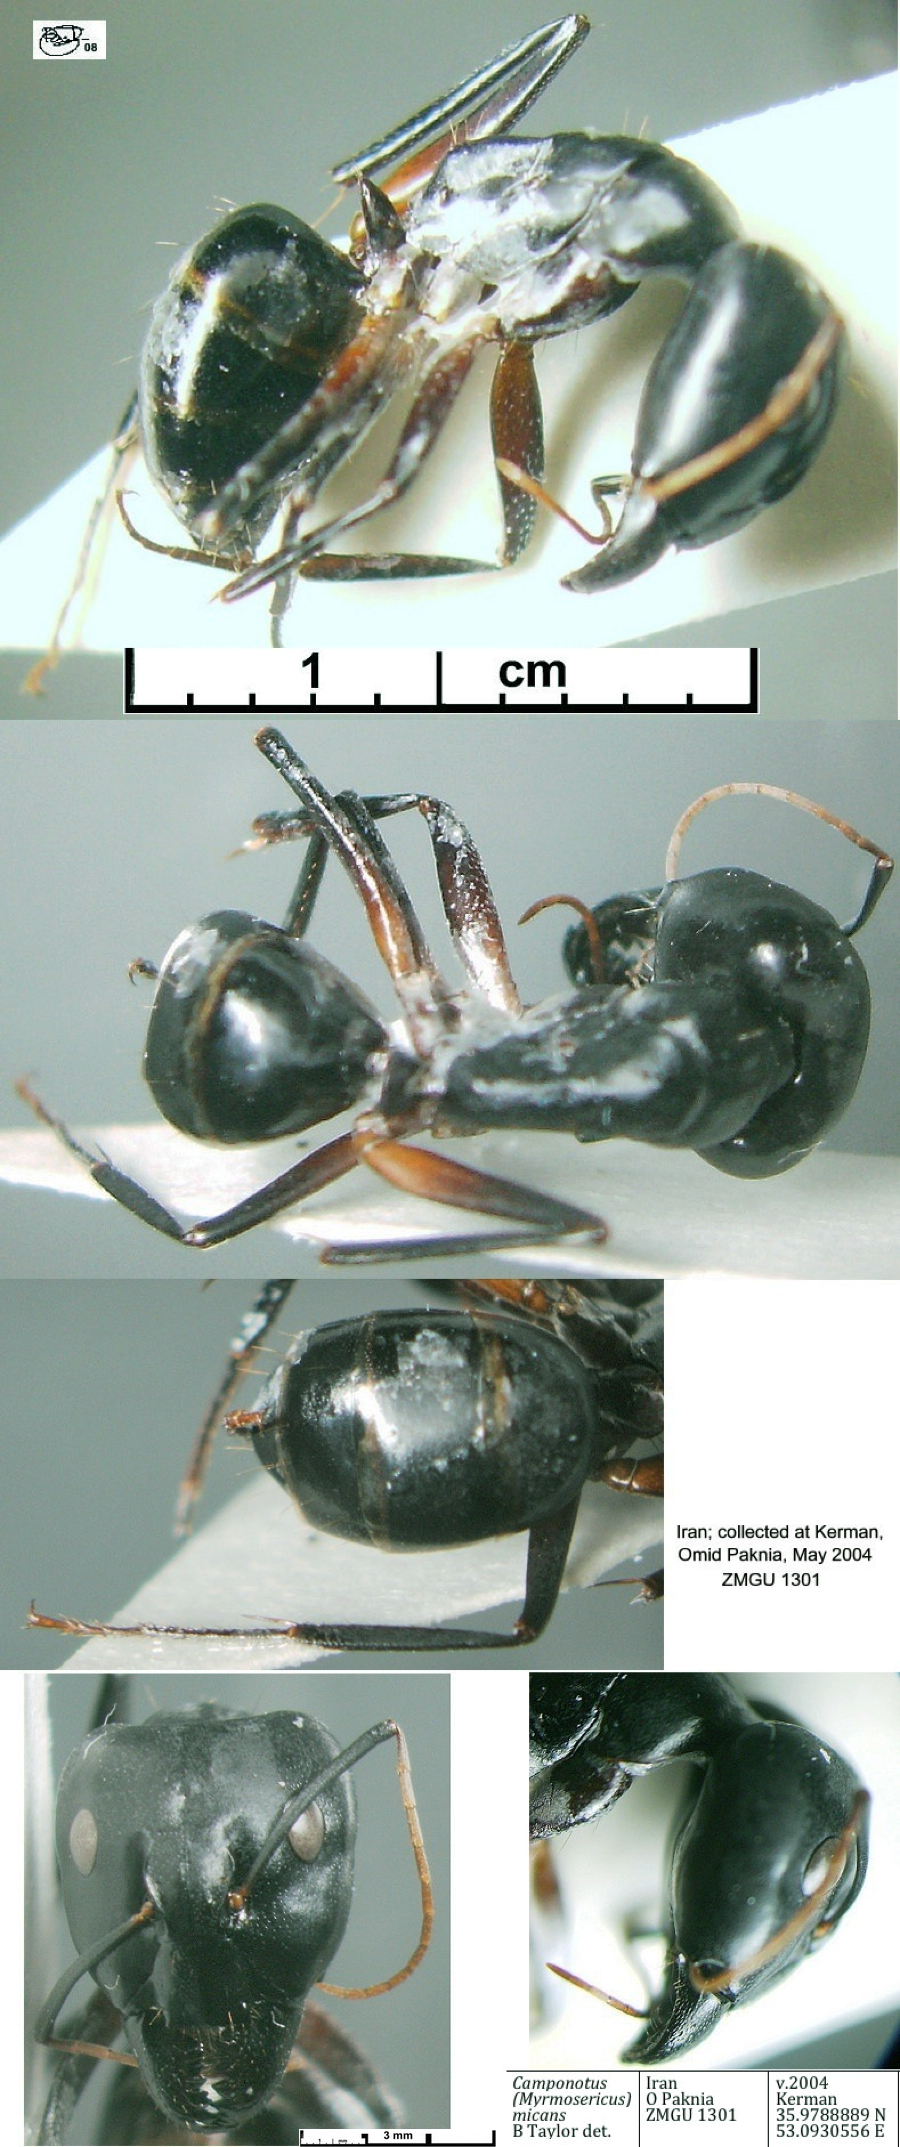 {Camponotus fellah Iran form major}